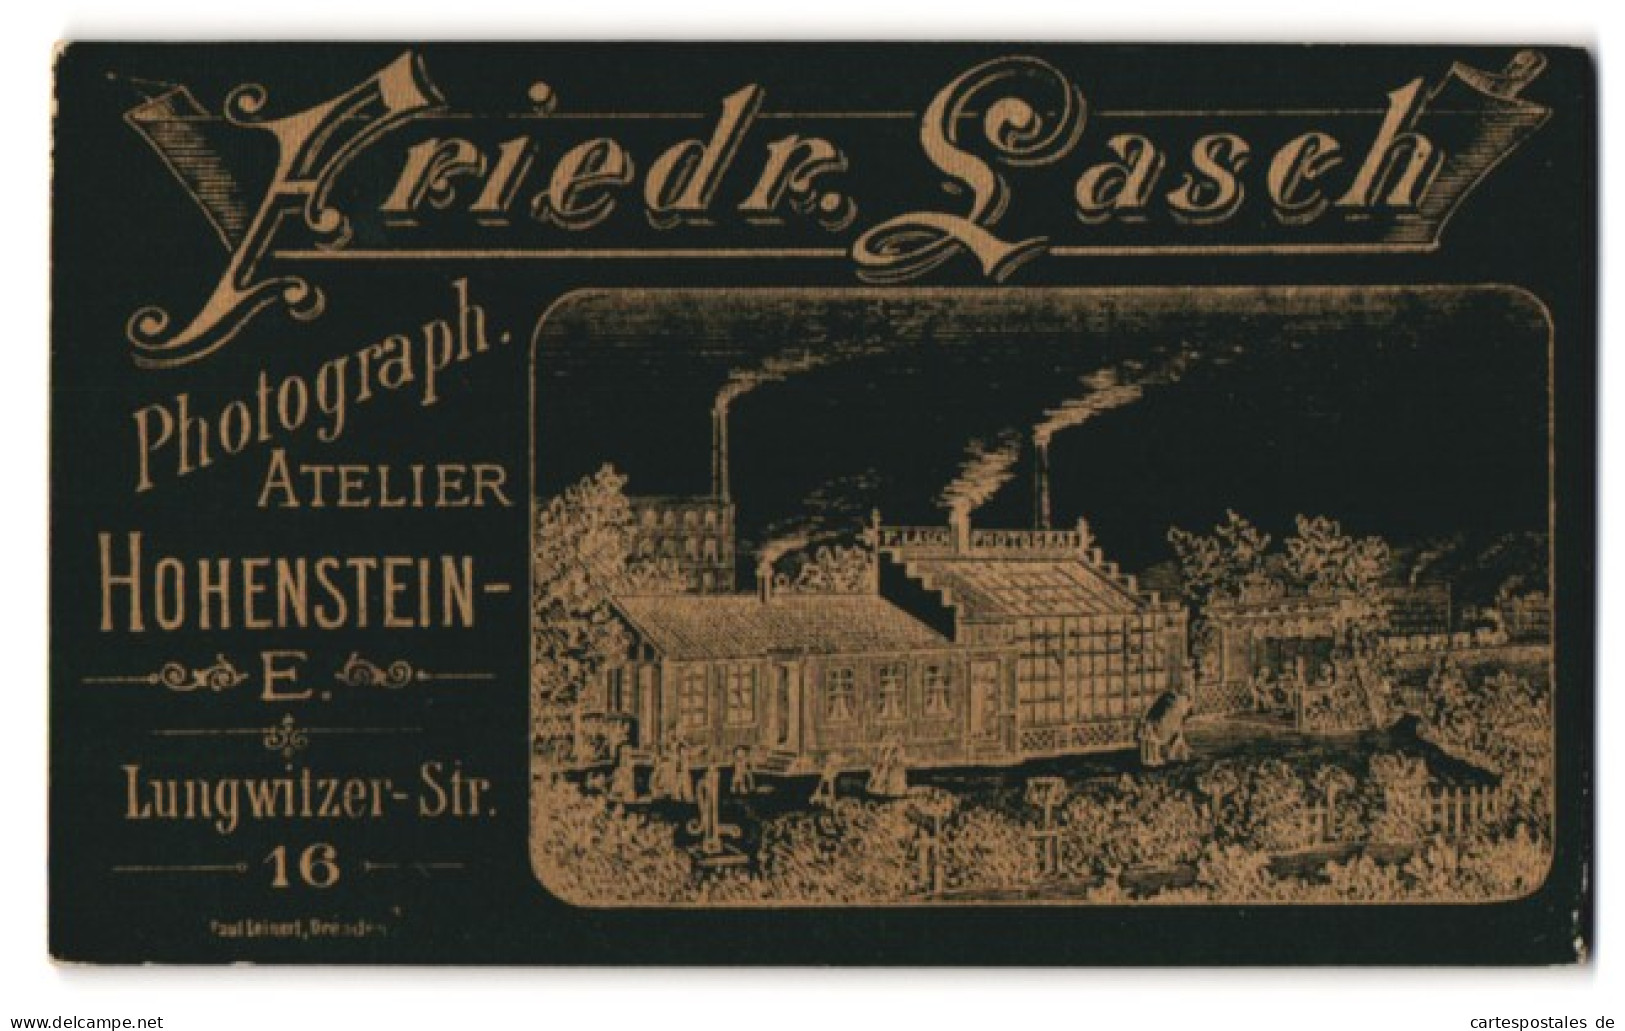 Fotografie Friedr. Lasch, Hohenstein-Ernstthal, Lungwitzer-Str. 16, Ansicht Hohenstein-Ernstthal, Ateliersgebäude  - Luoghi